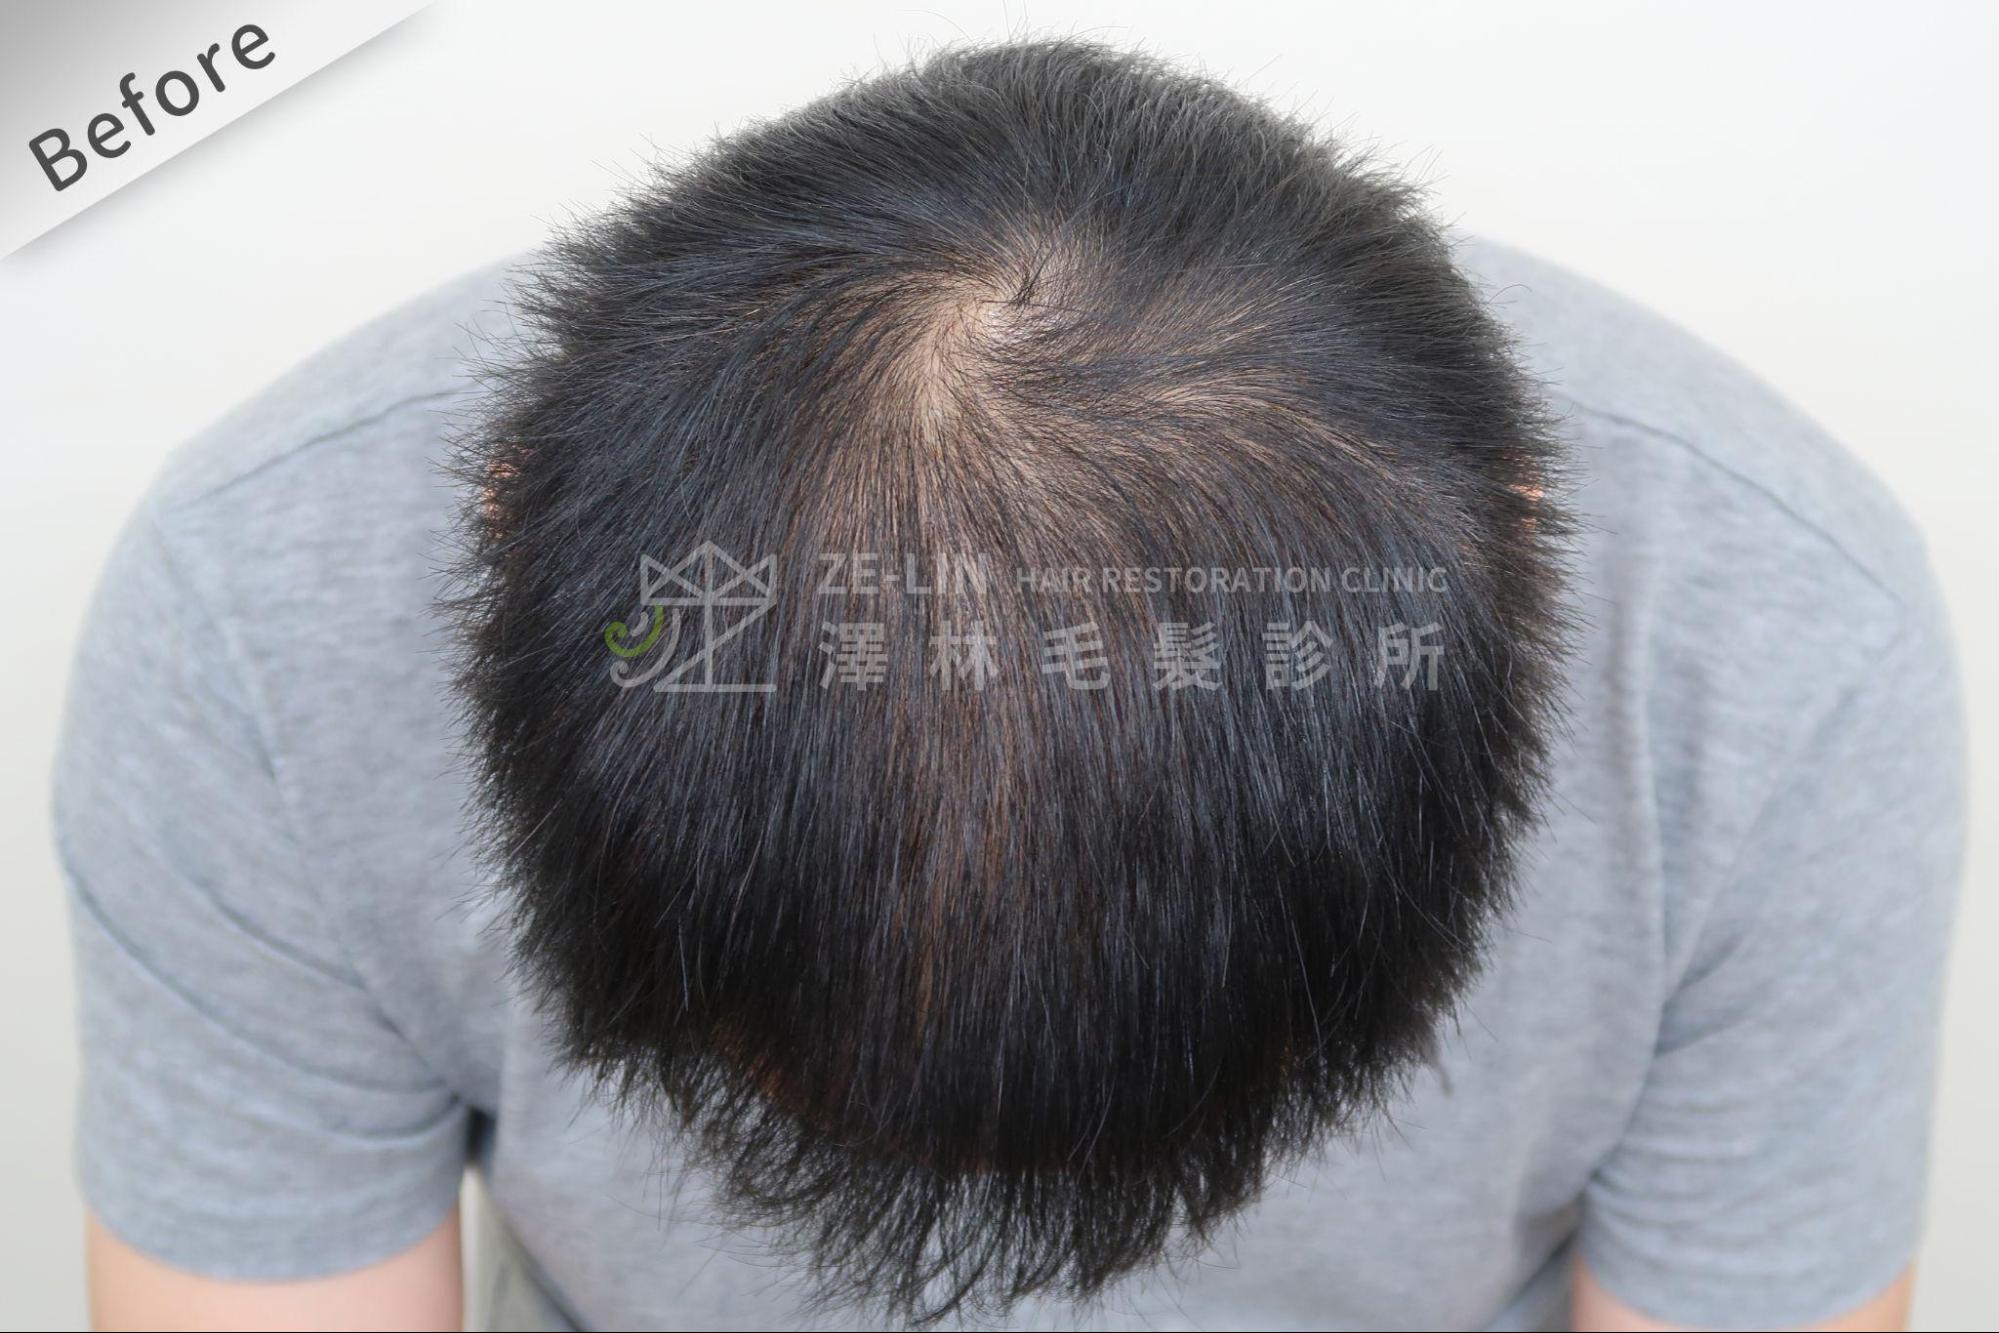 禿頭前兆可能為頭髮變細、變軟